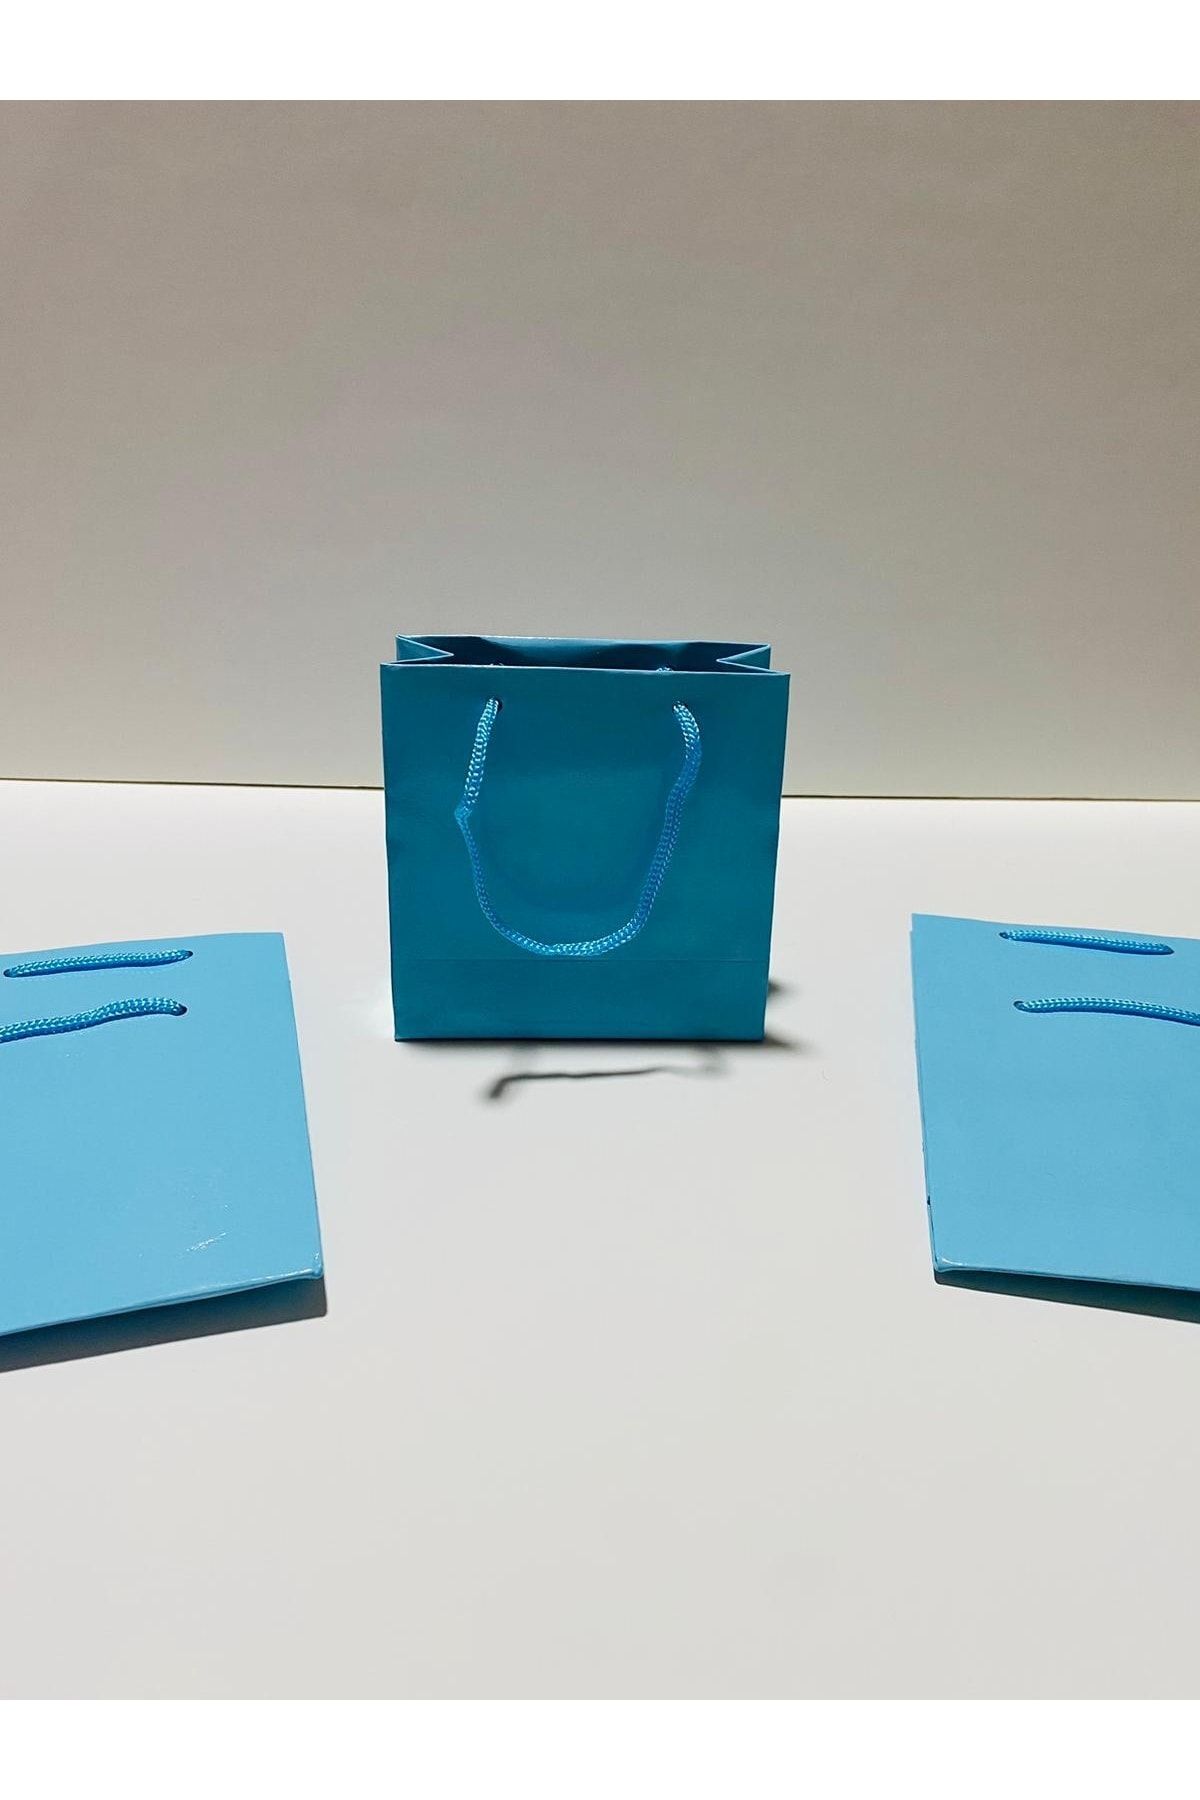 hediyelikcim Hediye Verme Organizasyonlarınız Için Şık Ve Çevre Dostu Karton Çantalar - 11x11 Cm 50 Adet Mavi